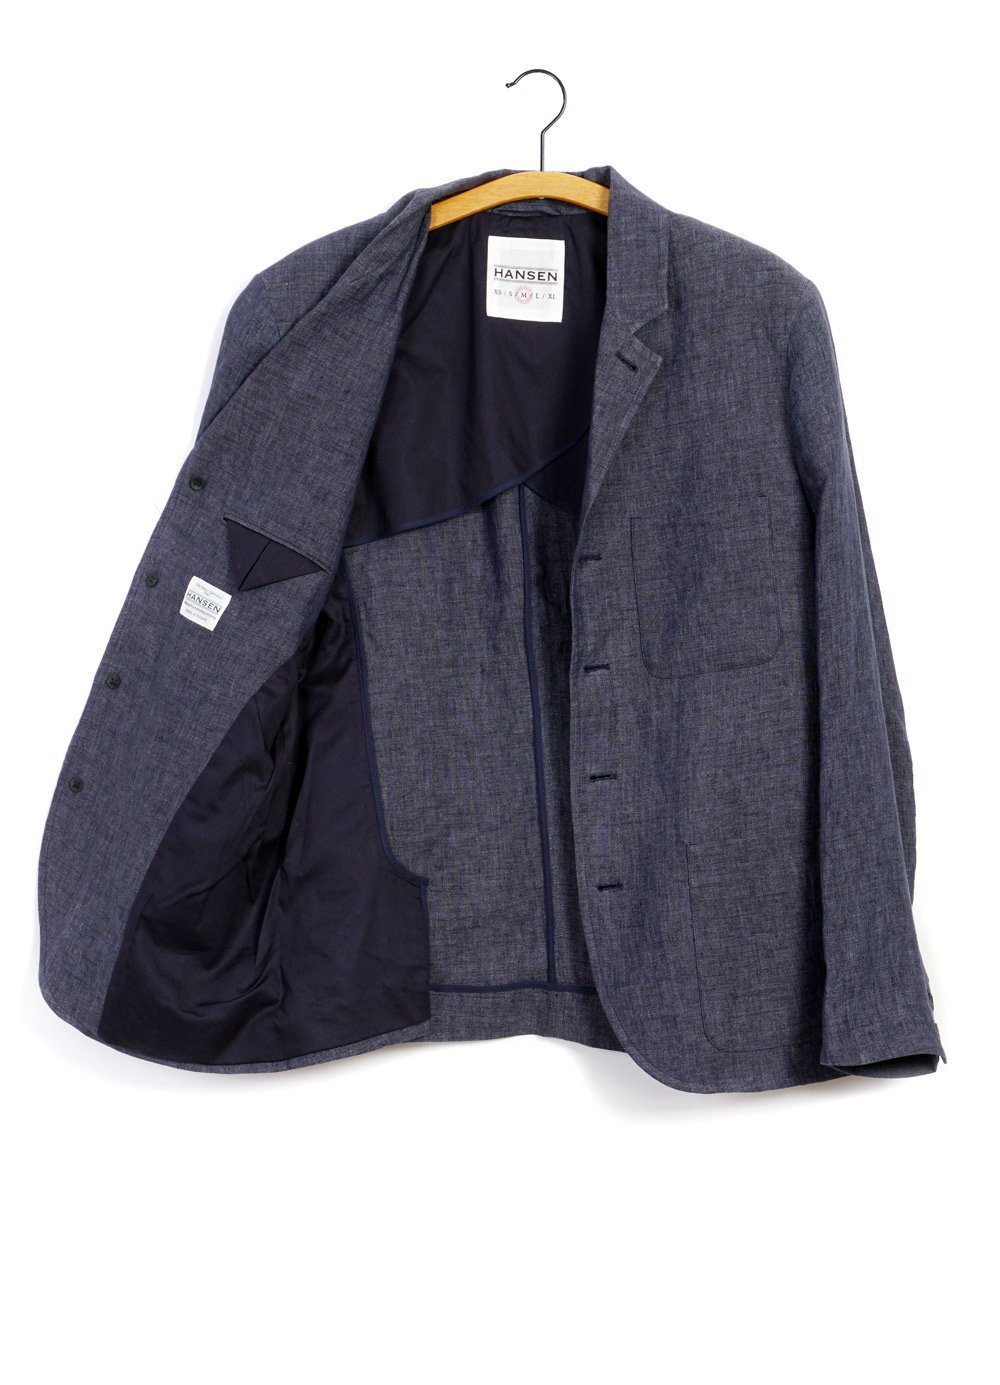 HANSEN Garments - ANKER | Casual Five Button Blazer | Blue Delave | €430 - HANSEN Garments